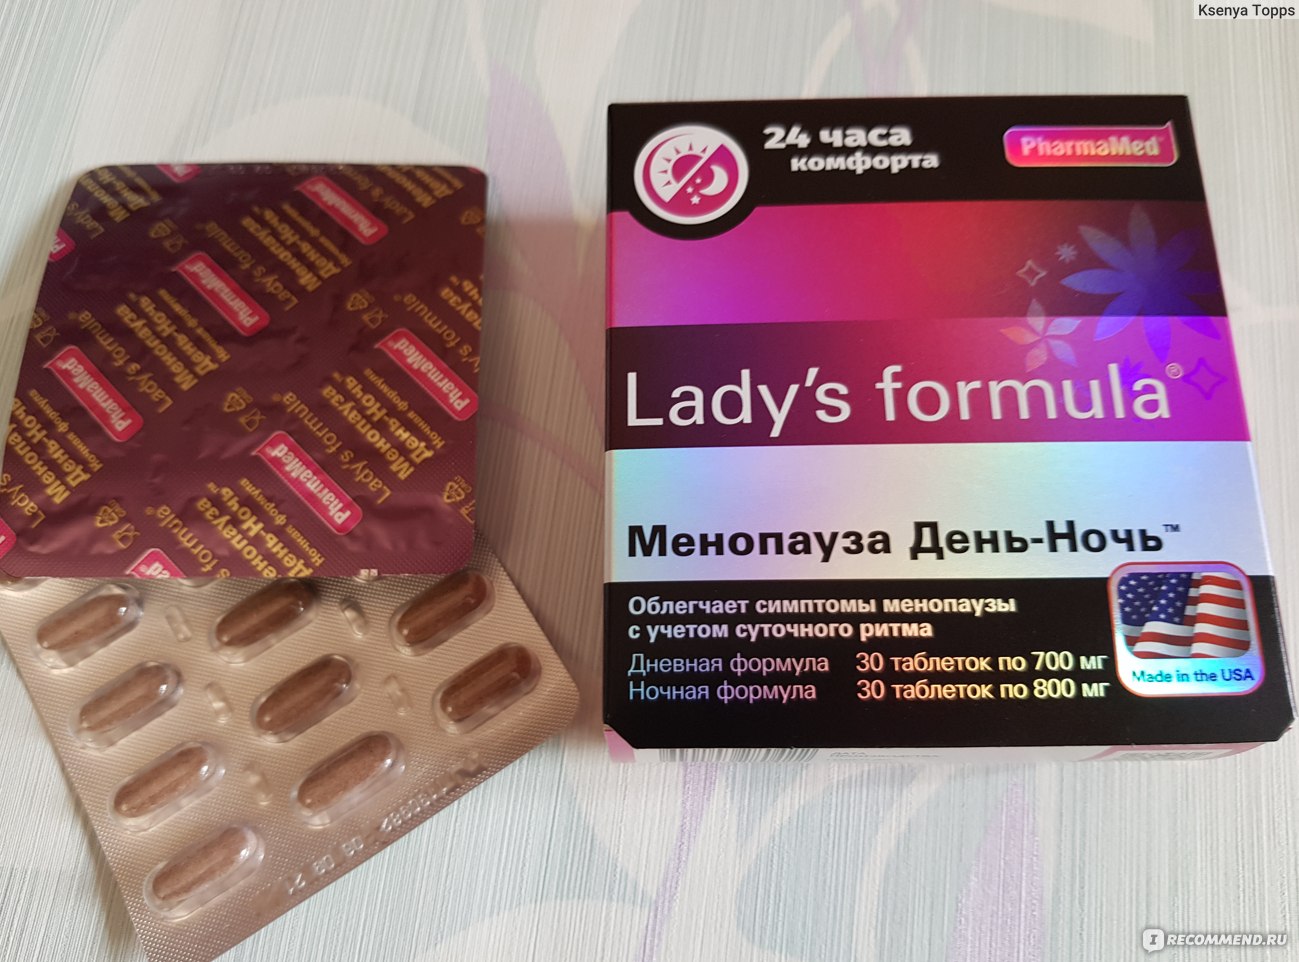 Ледис формула менопауза купить в аптеке